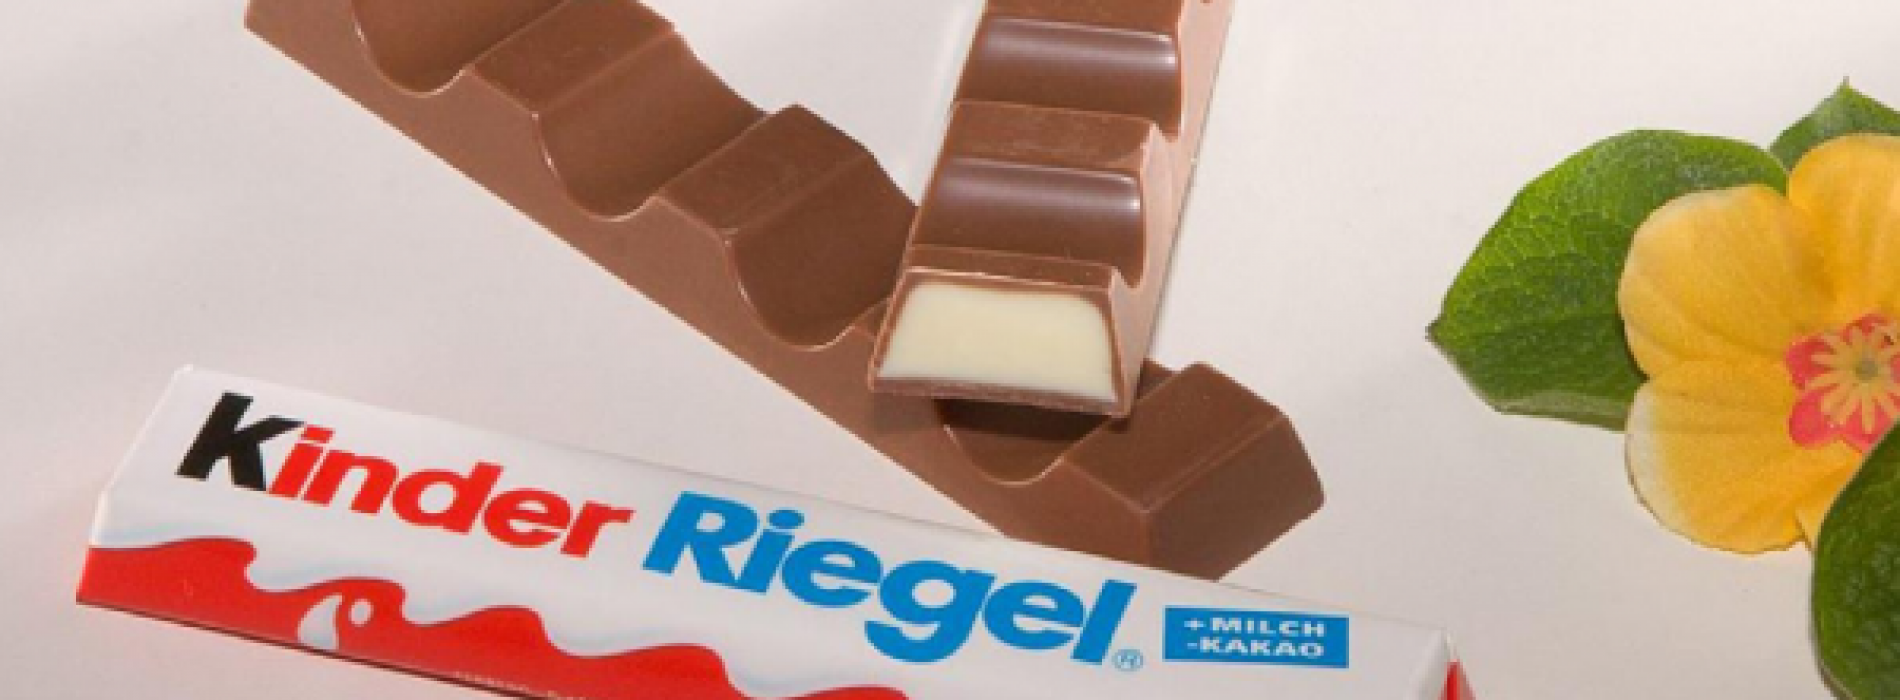 “Kinder chocolade bevat ‘waarschijnlijk kankerverwekkende’ stof en zou van de markt moeten worden gehaald”